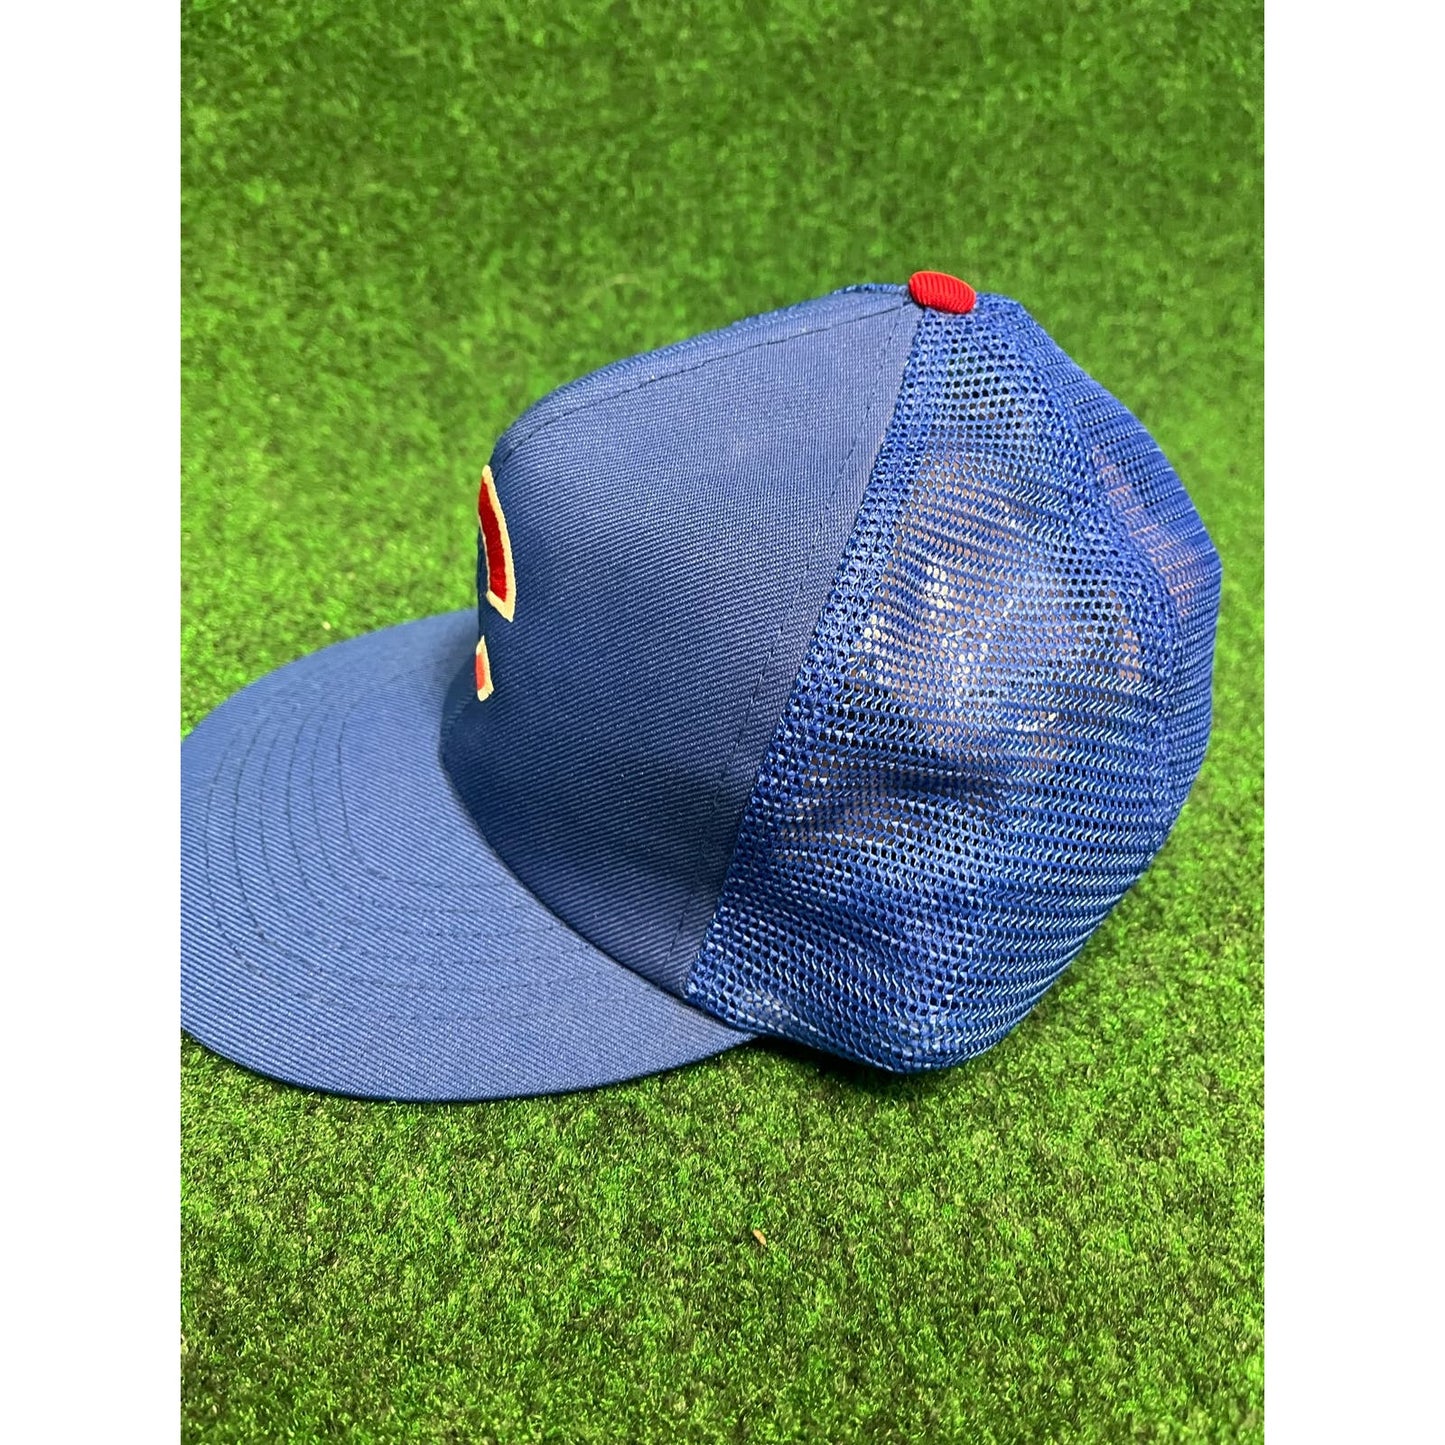 Vintage MLB Chicago Cubs Mesh Trucker Adjustable Snapback hat cap 90s Y2K